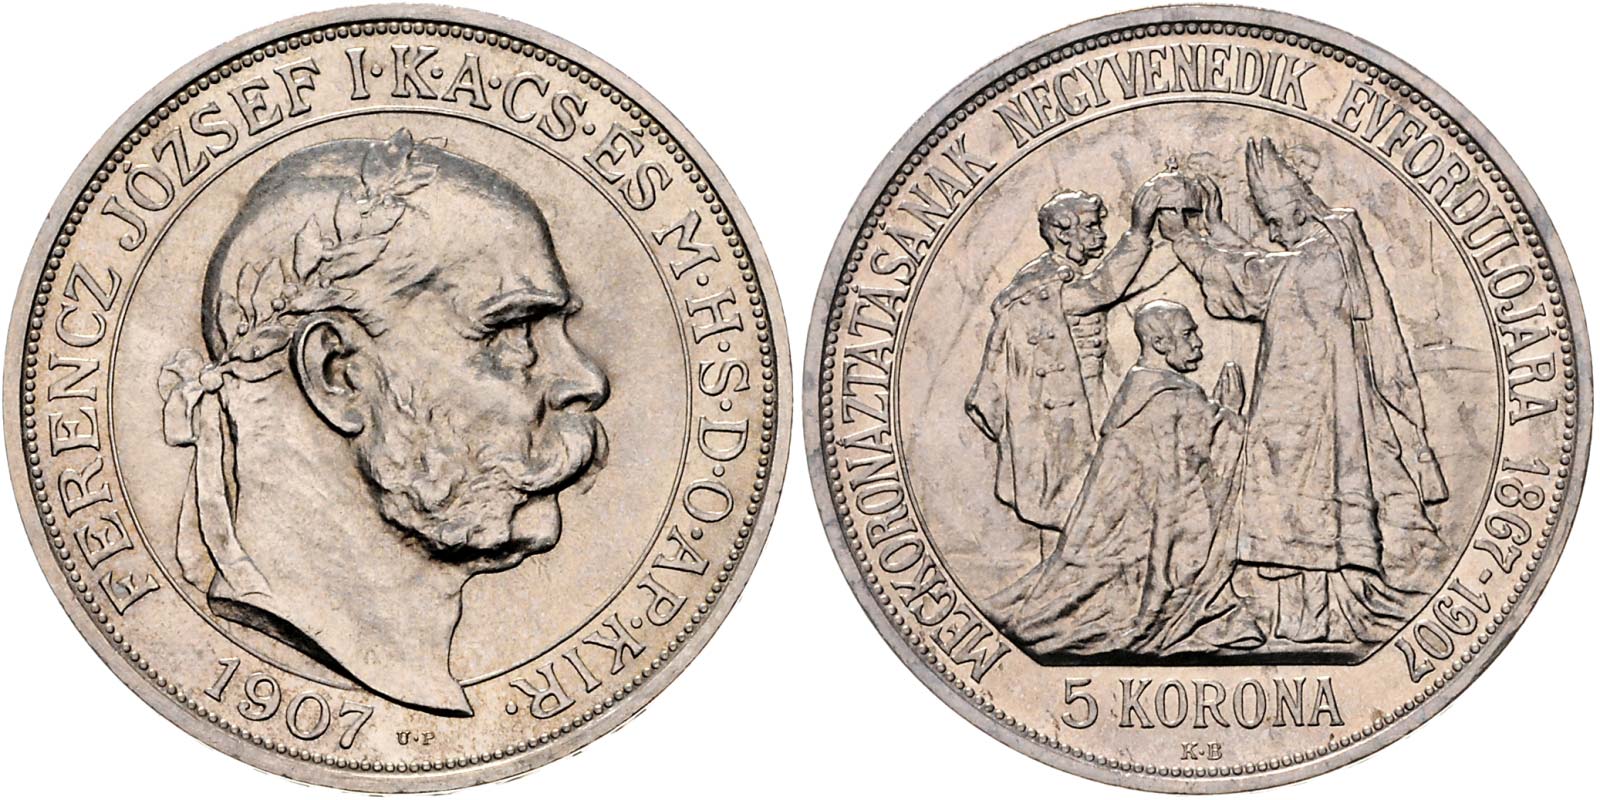 Серебряная монета Австро-Венгрия Франц Иосиф 1848 -190 5 крон